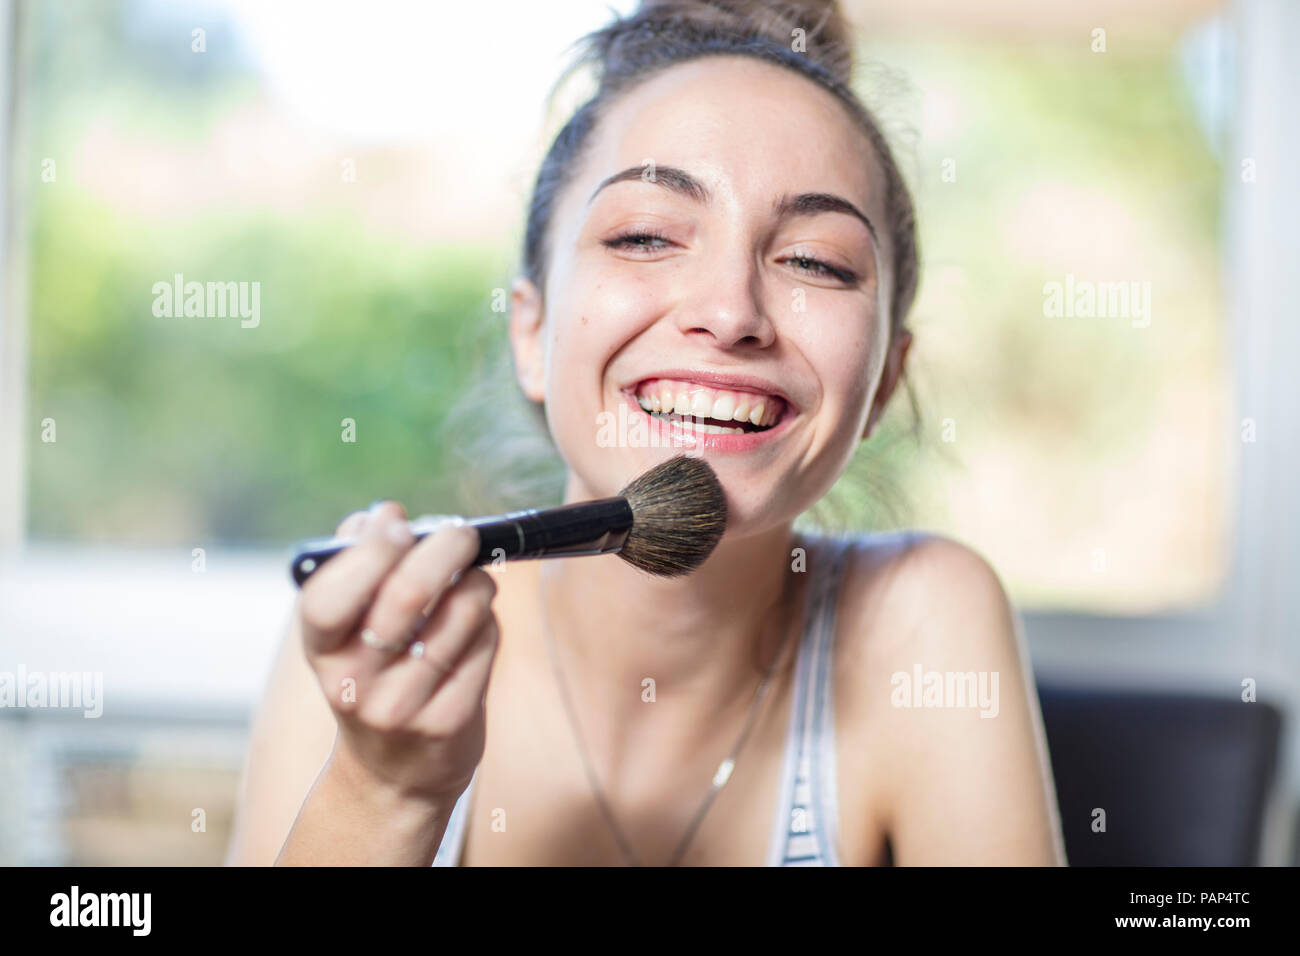 Happy teenage girl applying makeup Stock Photo